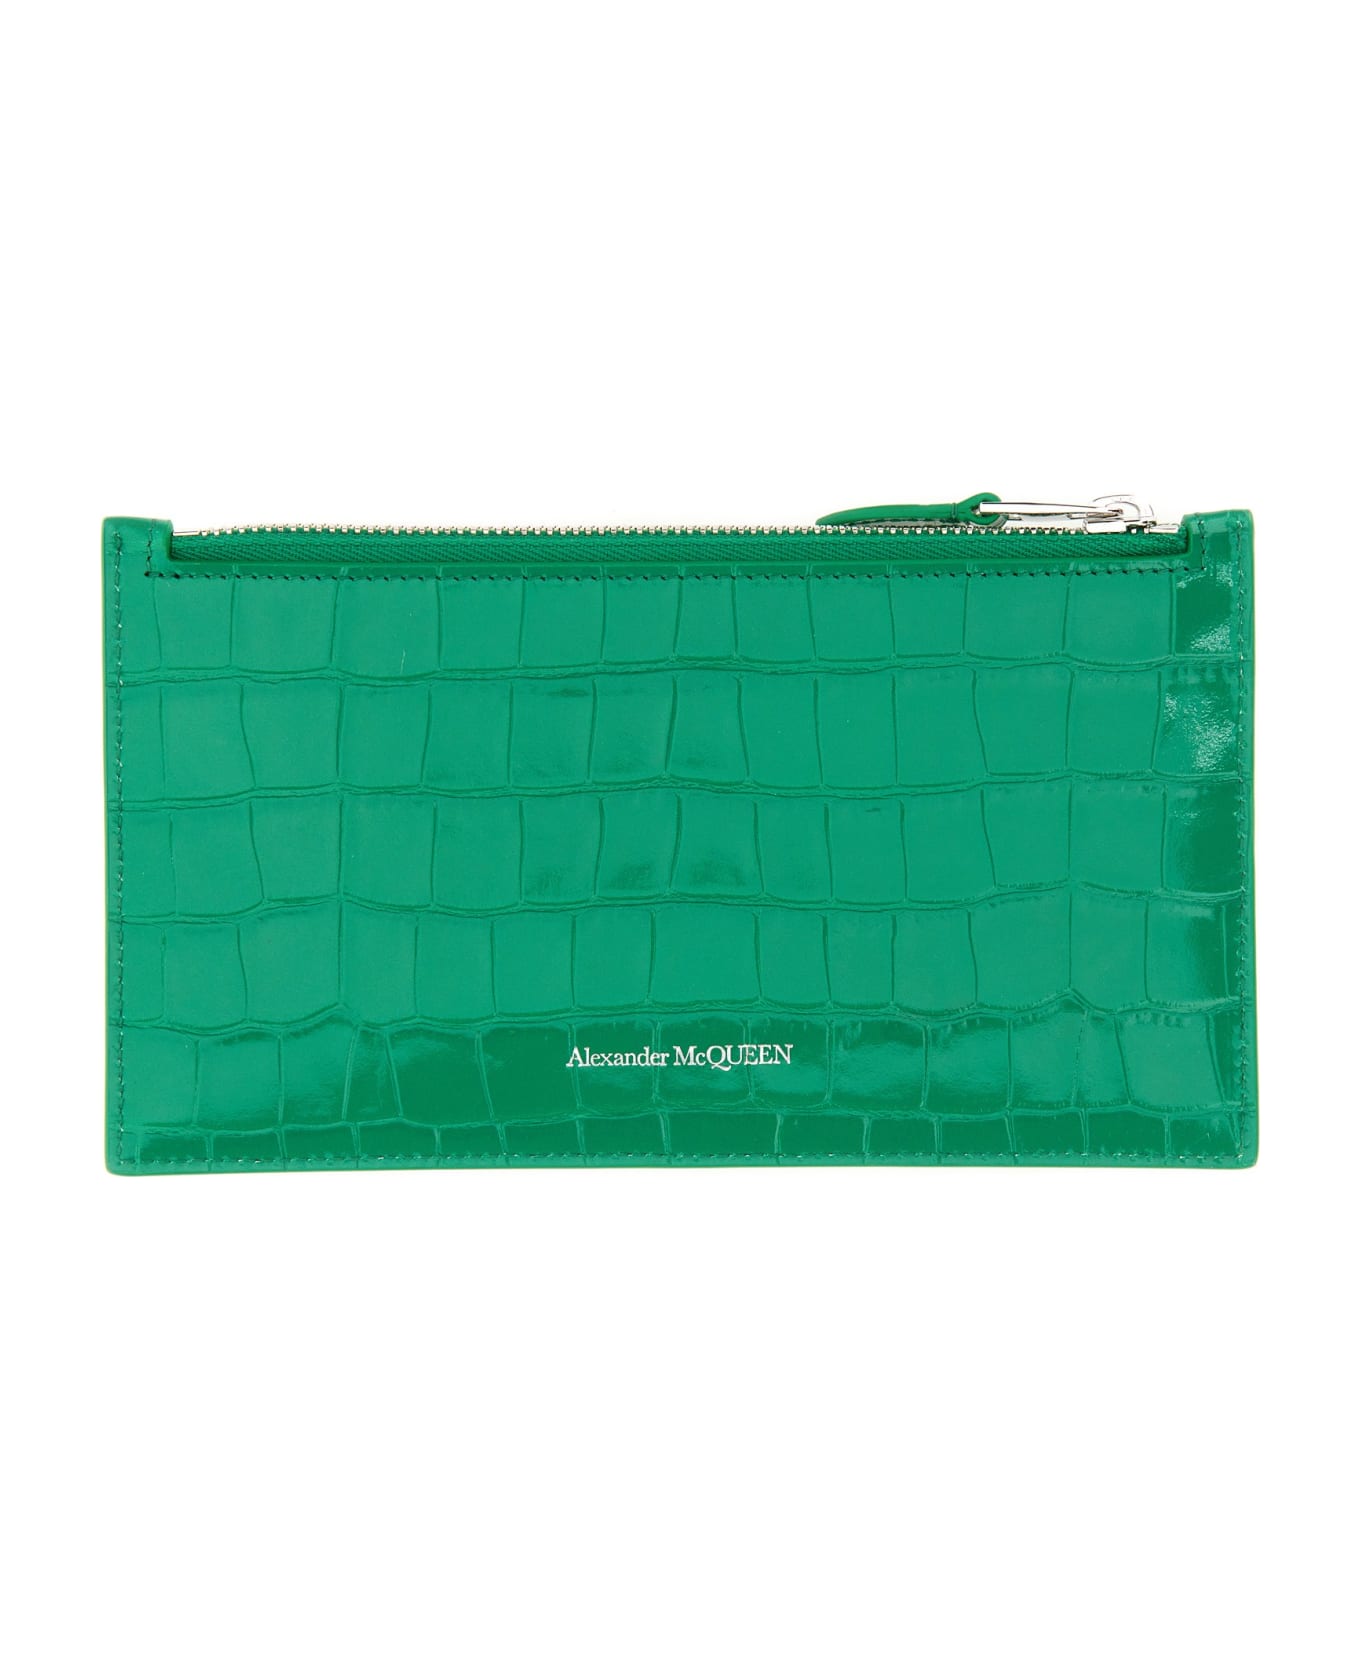 Alexander McQueen Flat Wallet With Zipper - Bright Green